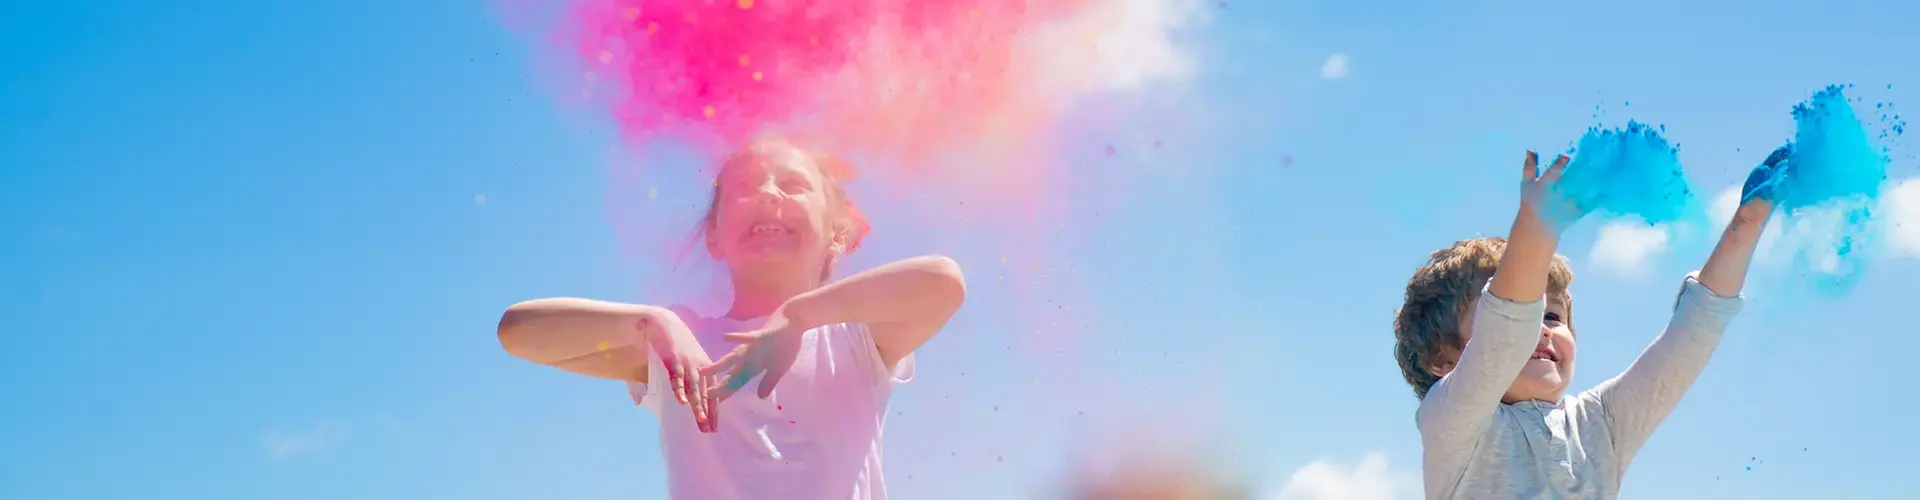 Barn kastar färgpulver i luften